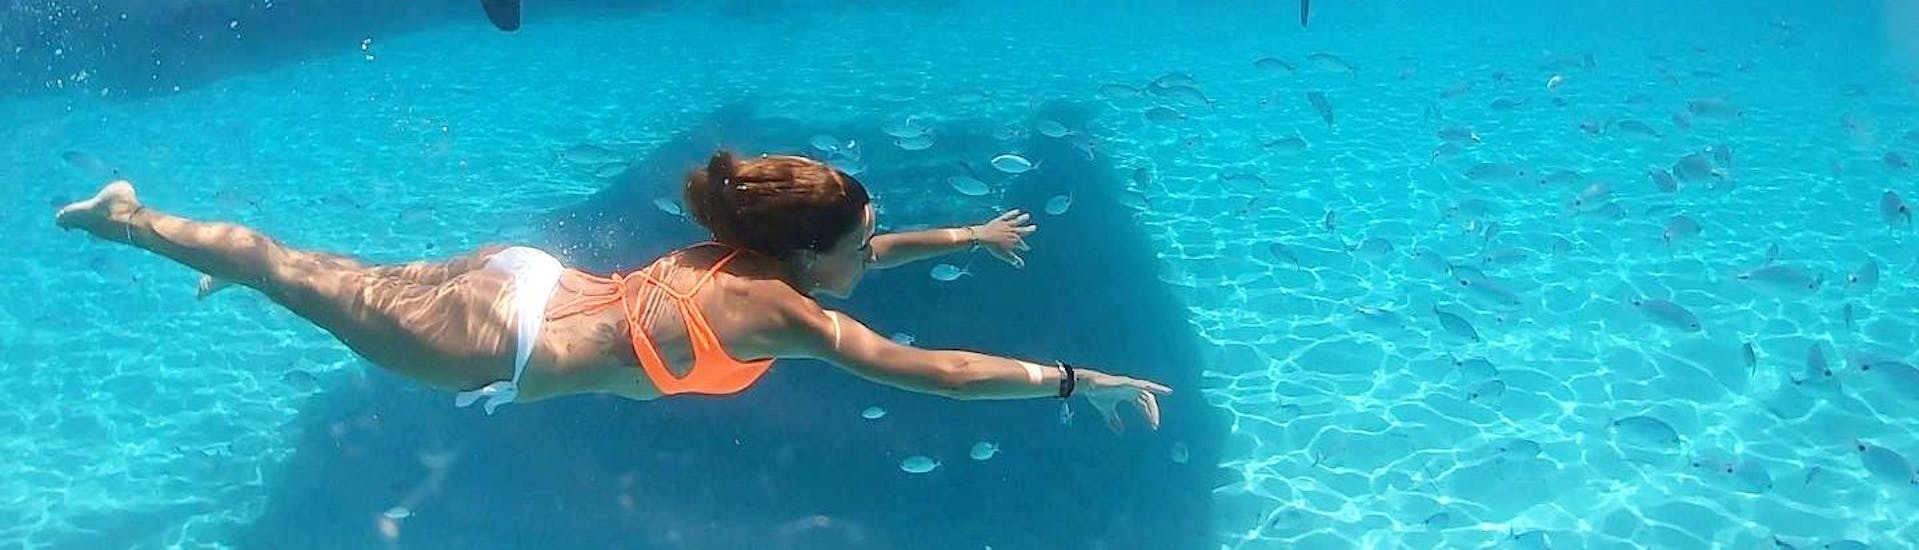 Zwemmen in kristalhelder water is mogelijk met de Private Catamaran Trip naar Asinara Park en La Pelosa met Buriana Charter.